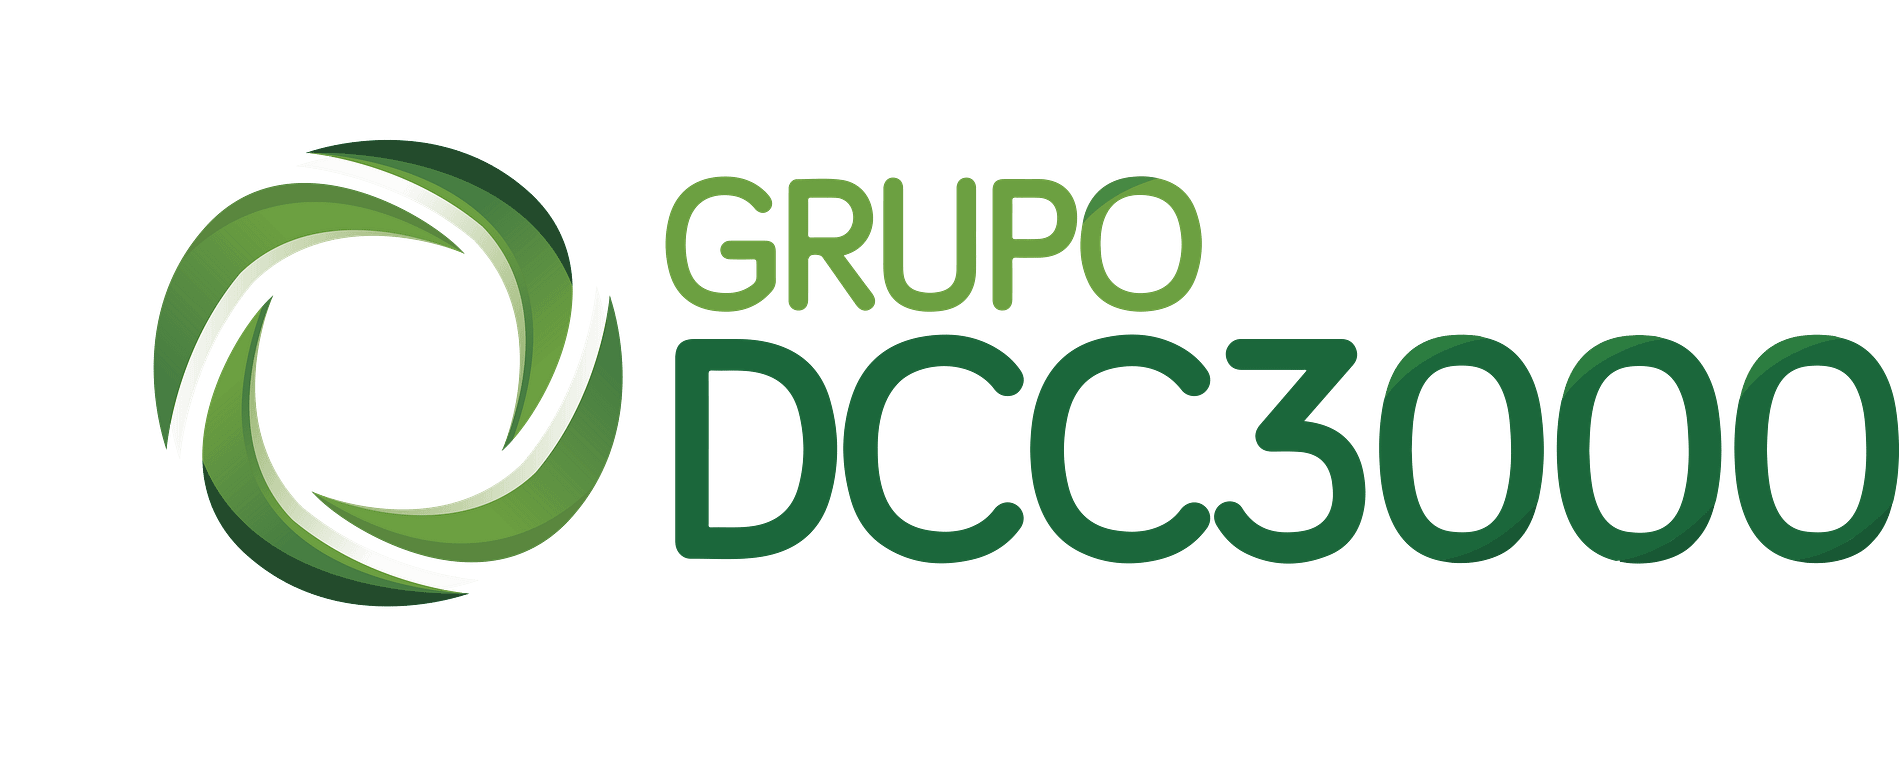 Grupo DCC 3000